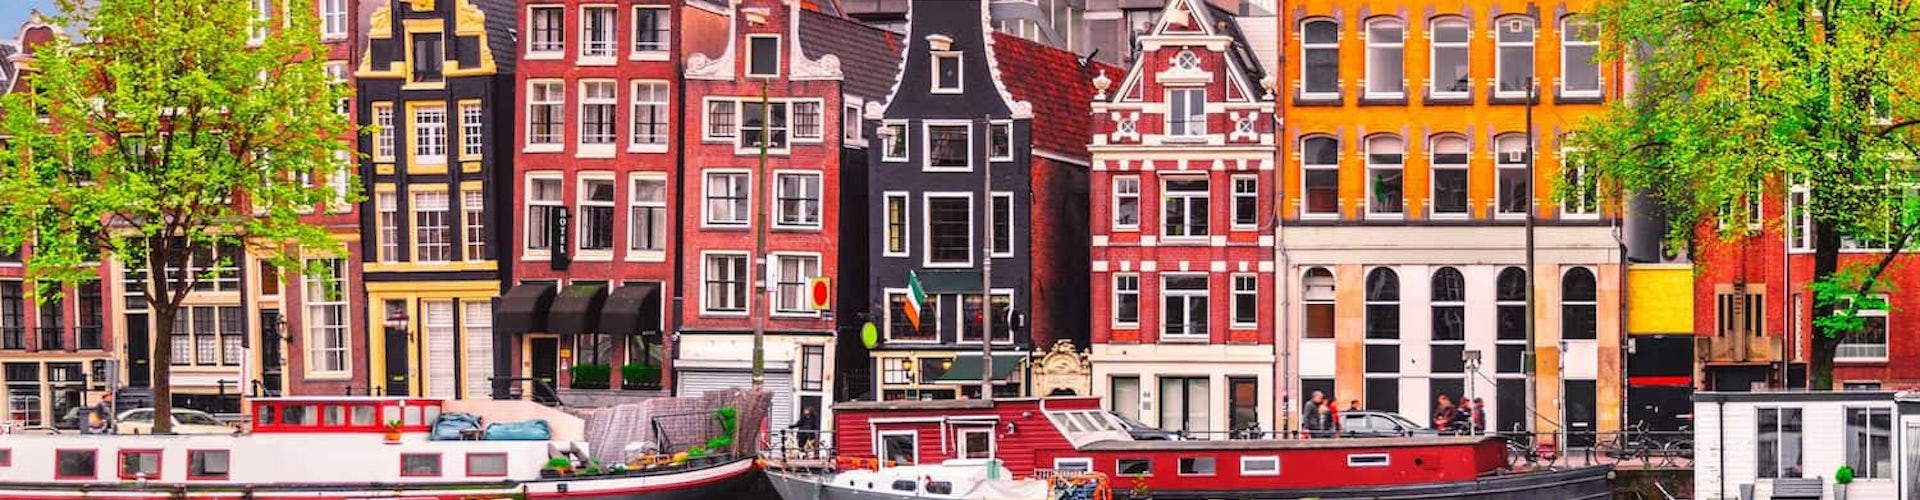 Canales en Ámsterdam